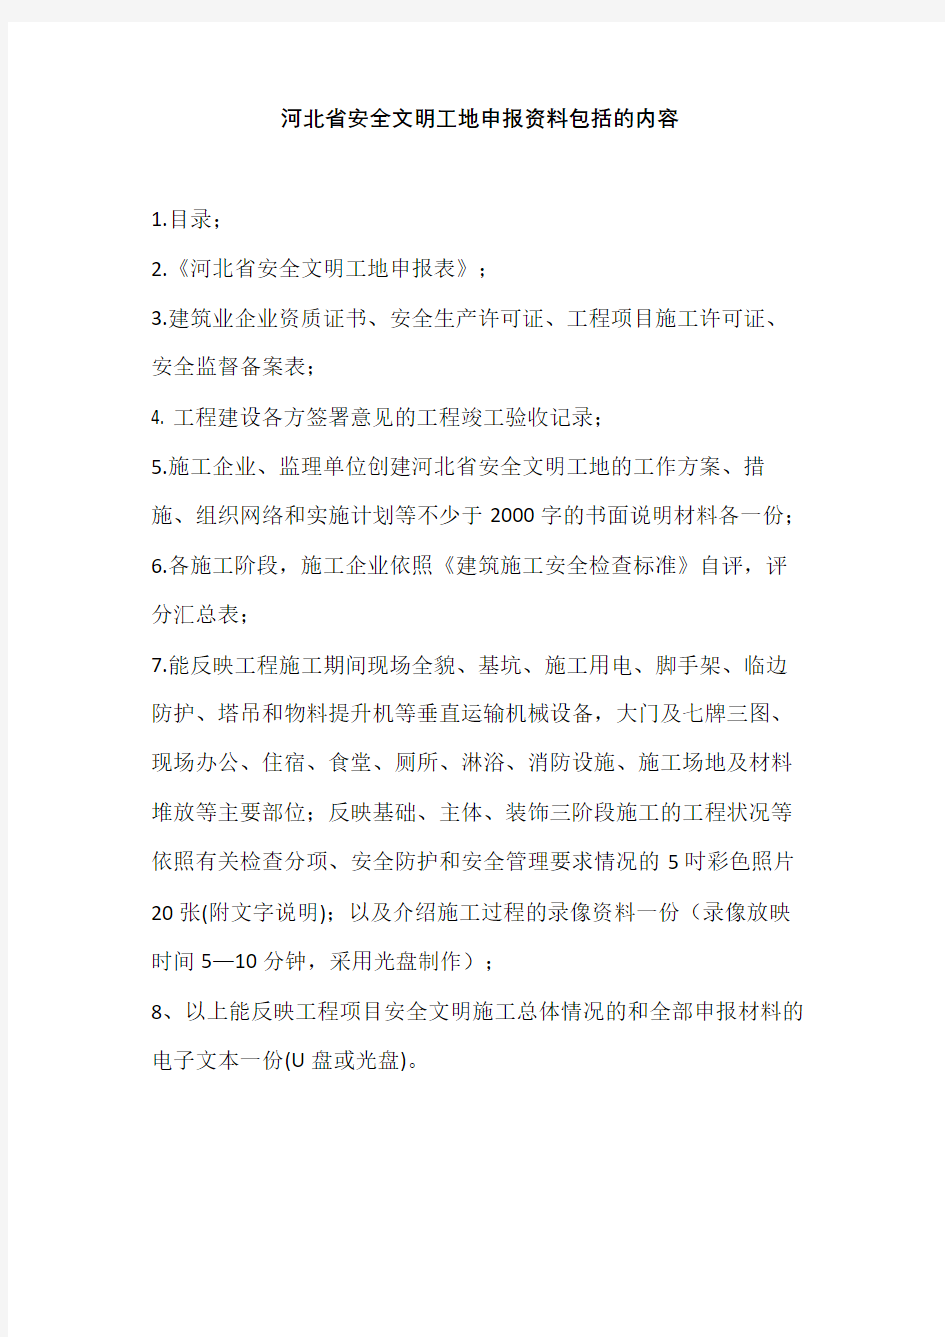 河北省安全文明工地申报资料包括的内容